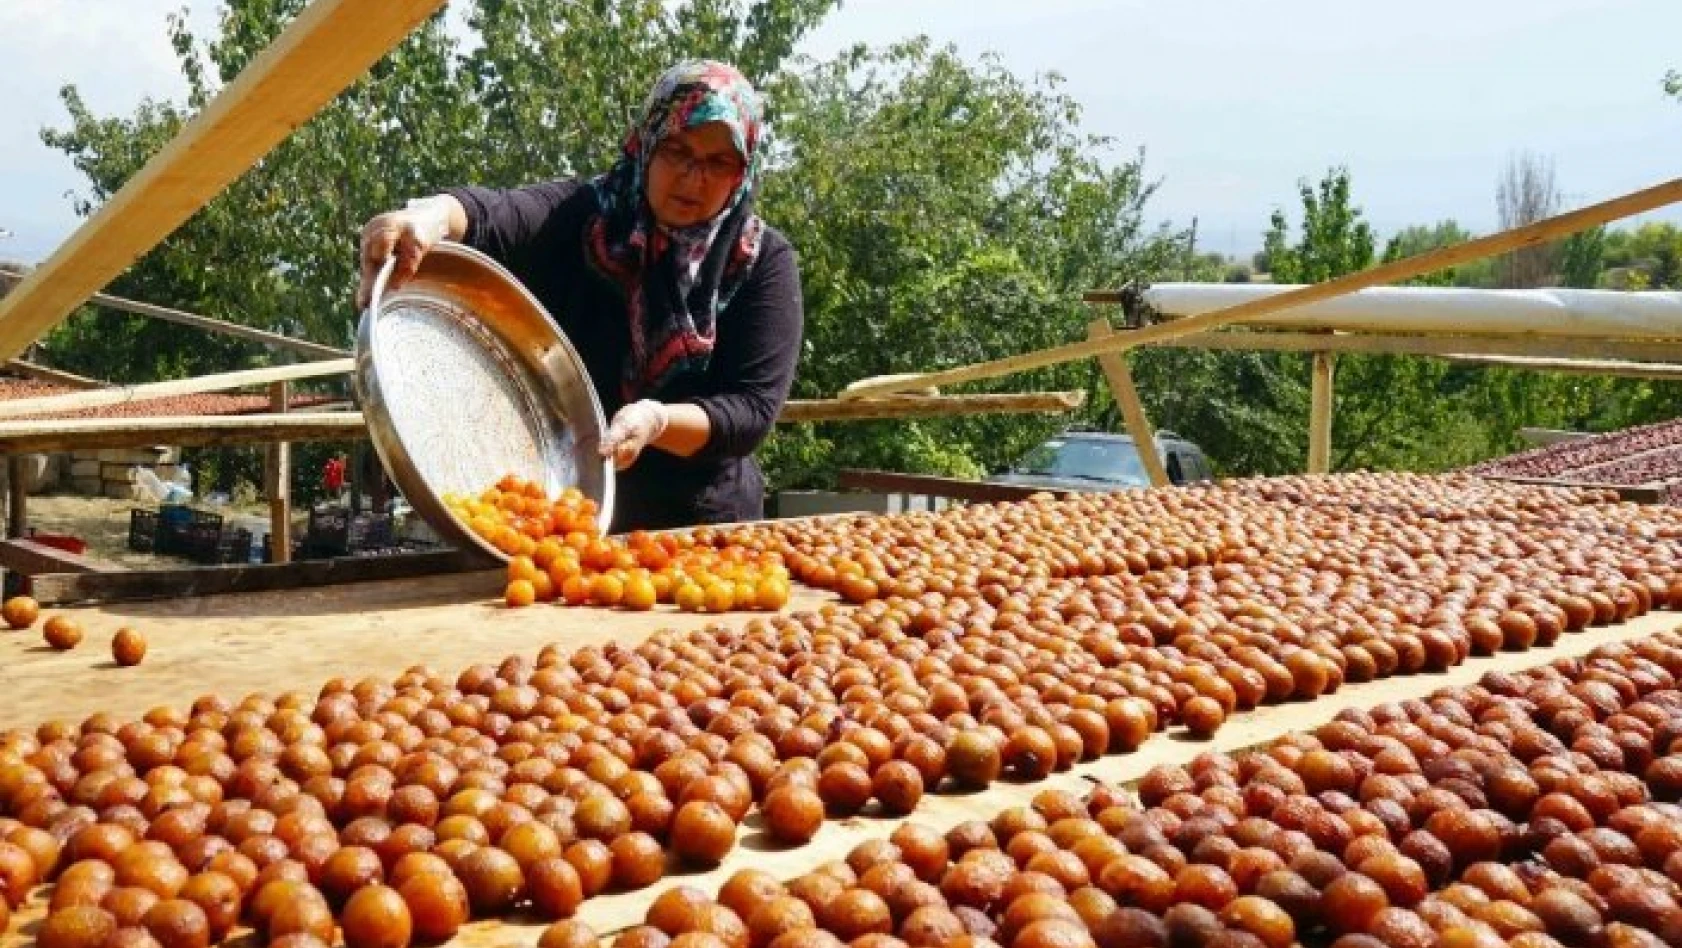 Osmanlı mutfağının vazgeçilmez meyvesi Üryani eriğinin hasadı başladı